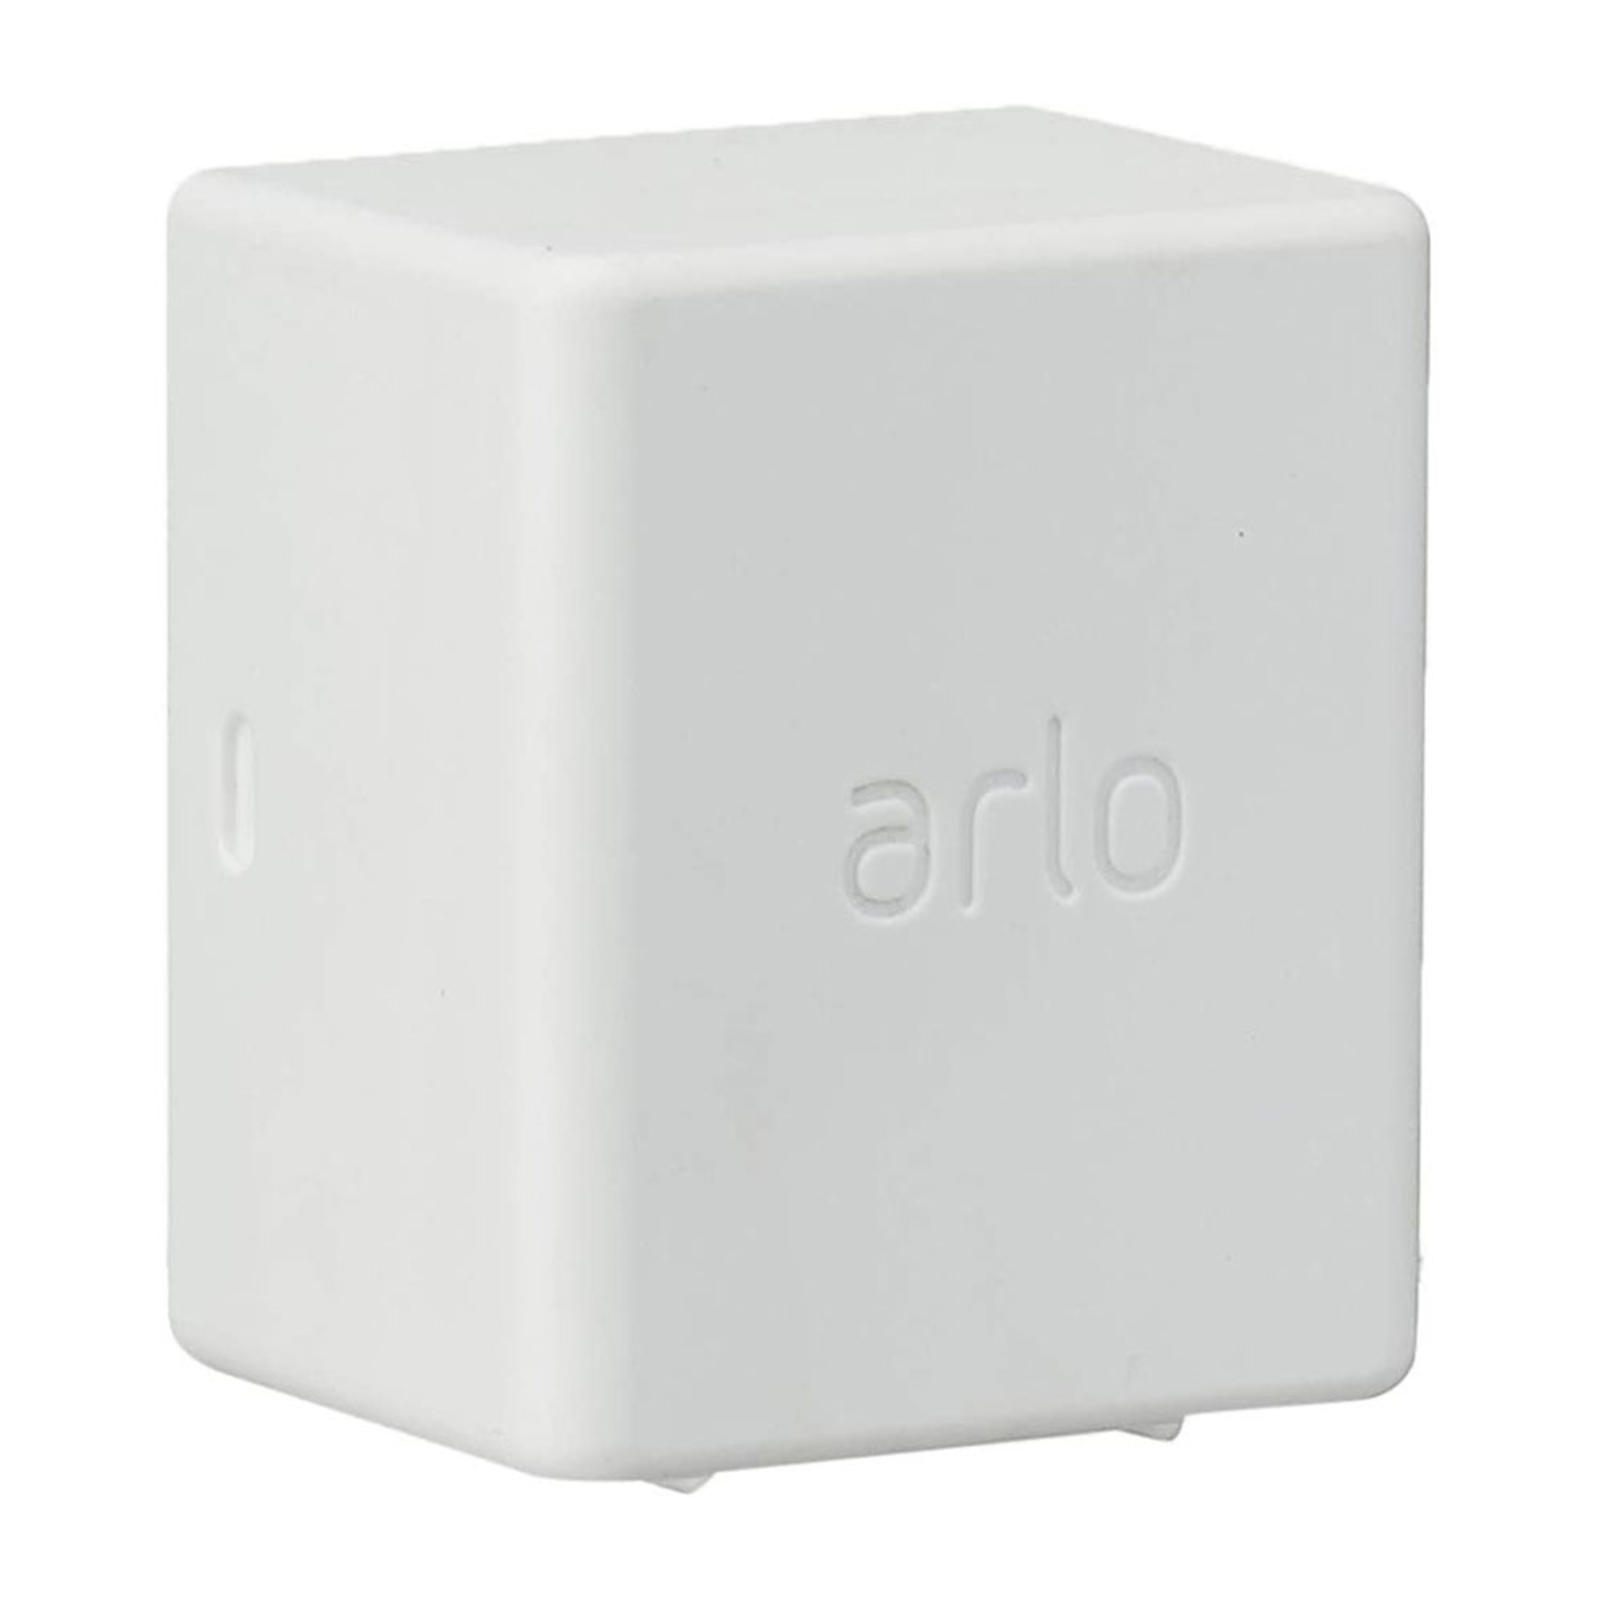 Допълнителна батерия Arlo за охранителна камера Ultra, Pro3